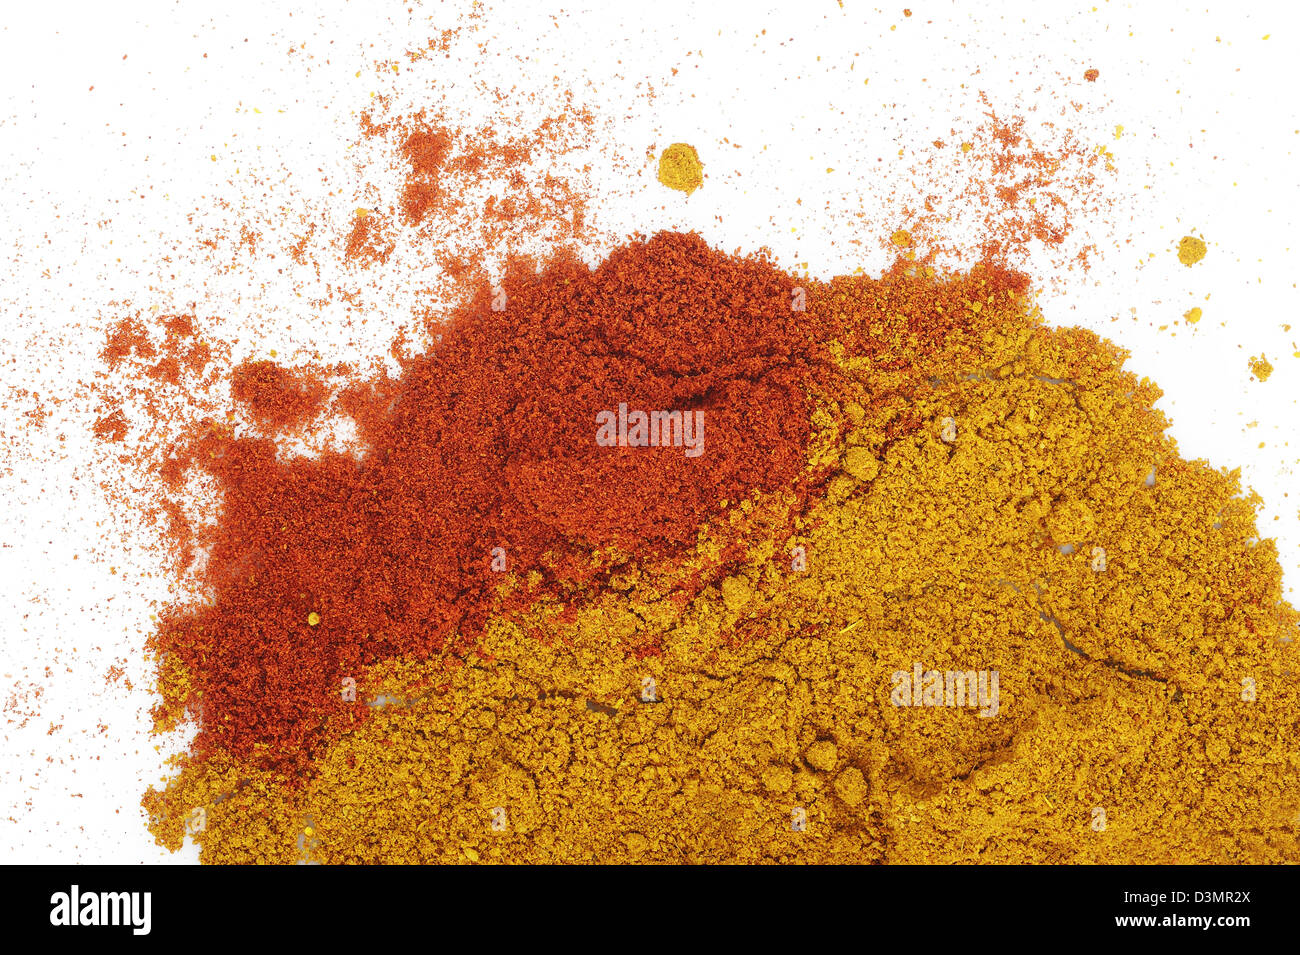 El pimentón en polvo y polvo de curry Foto de stock